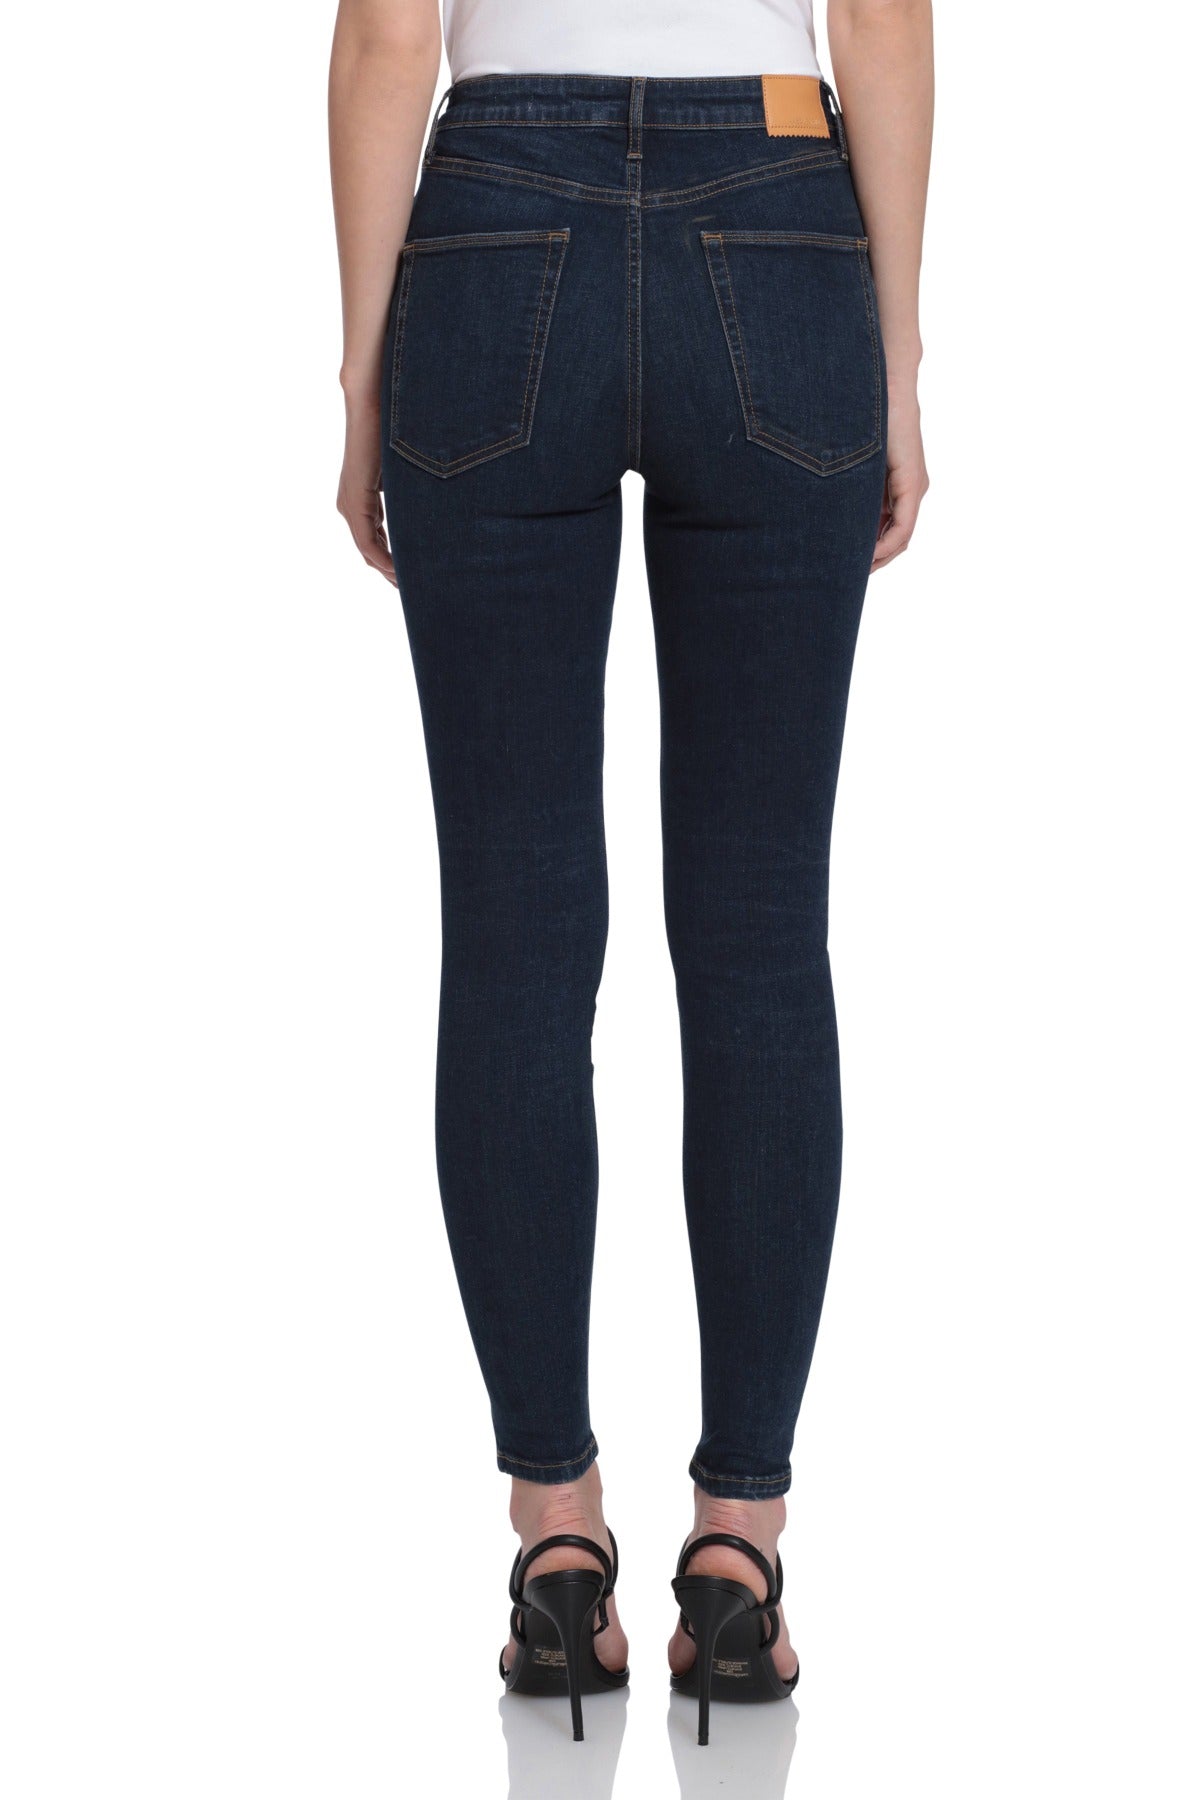 Jeans Waist Denim Leggings Pants, jeans, abdomen, trousers, terri Edelman  Graphic Design Inc png | PNGWing